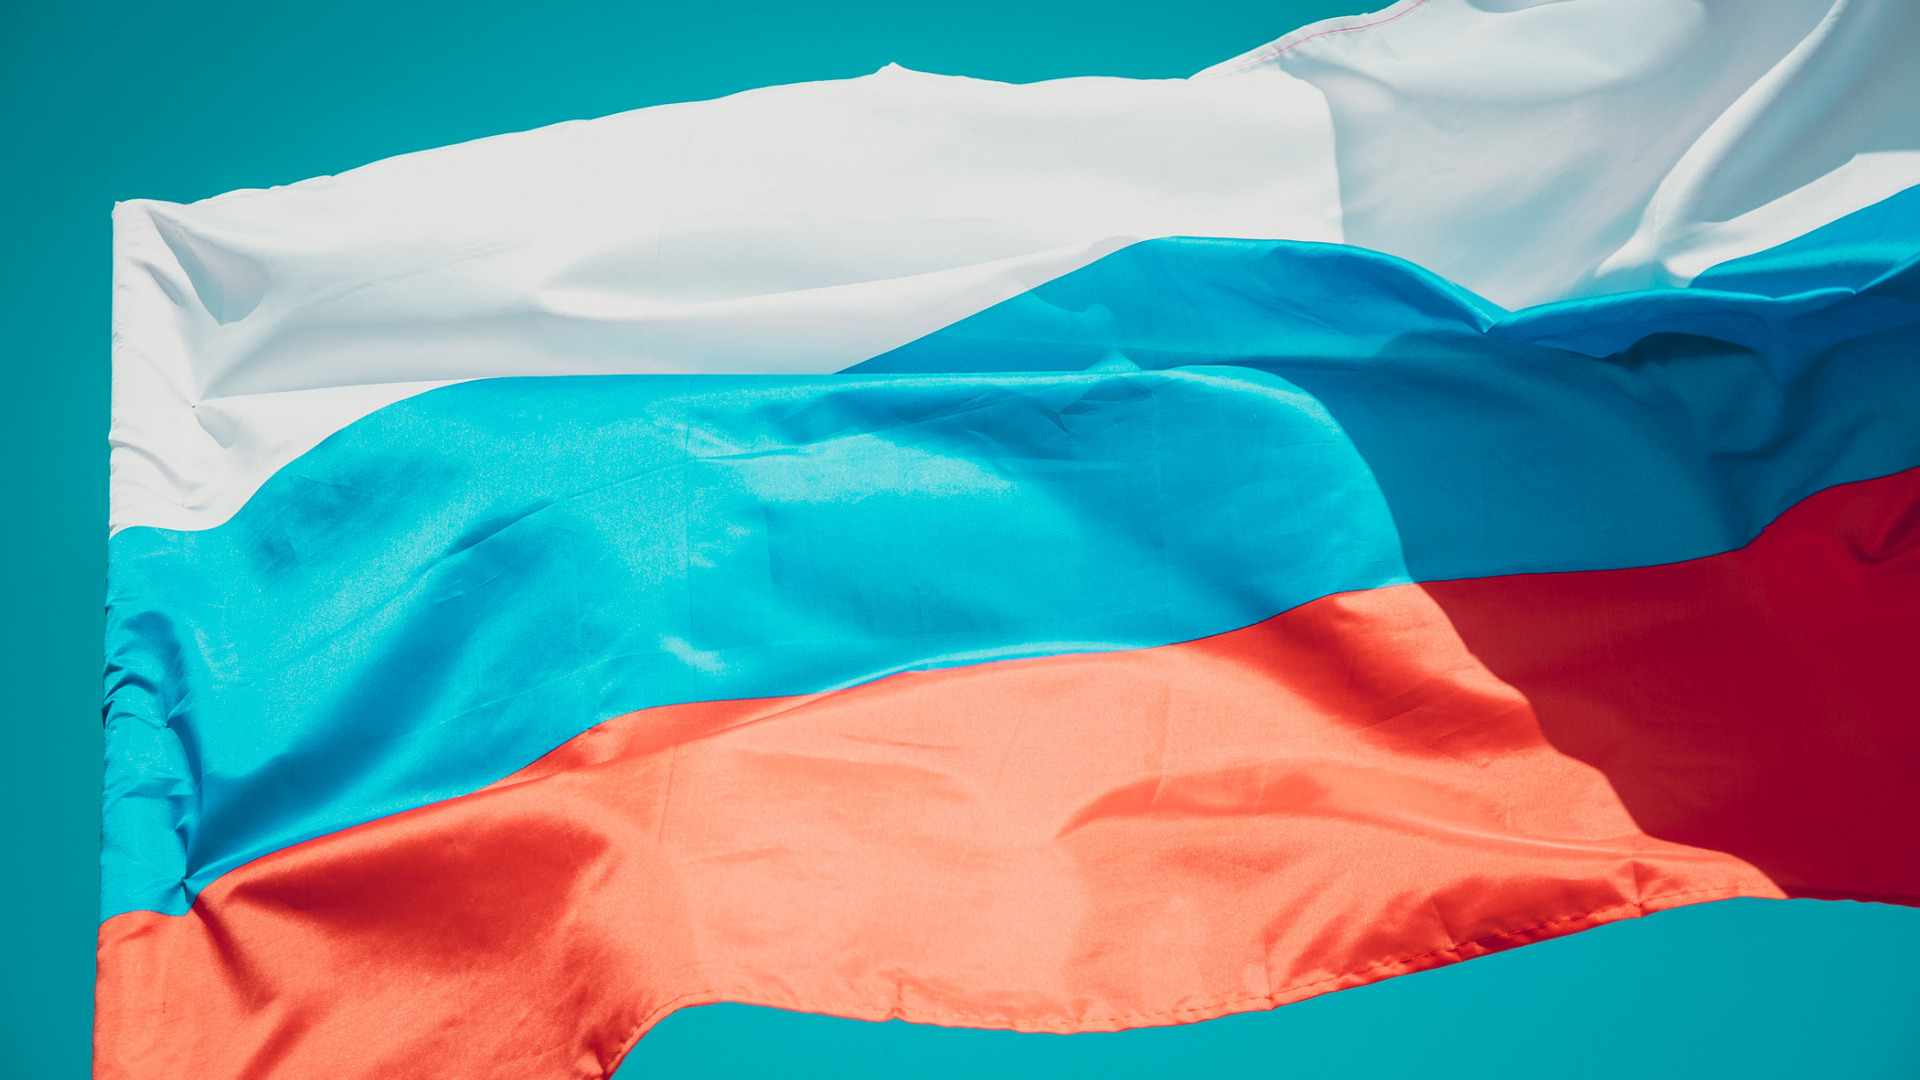 Уникальный арт-объект в цветах флага России установят на набережной Волгограда